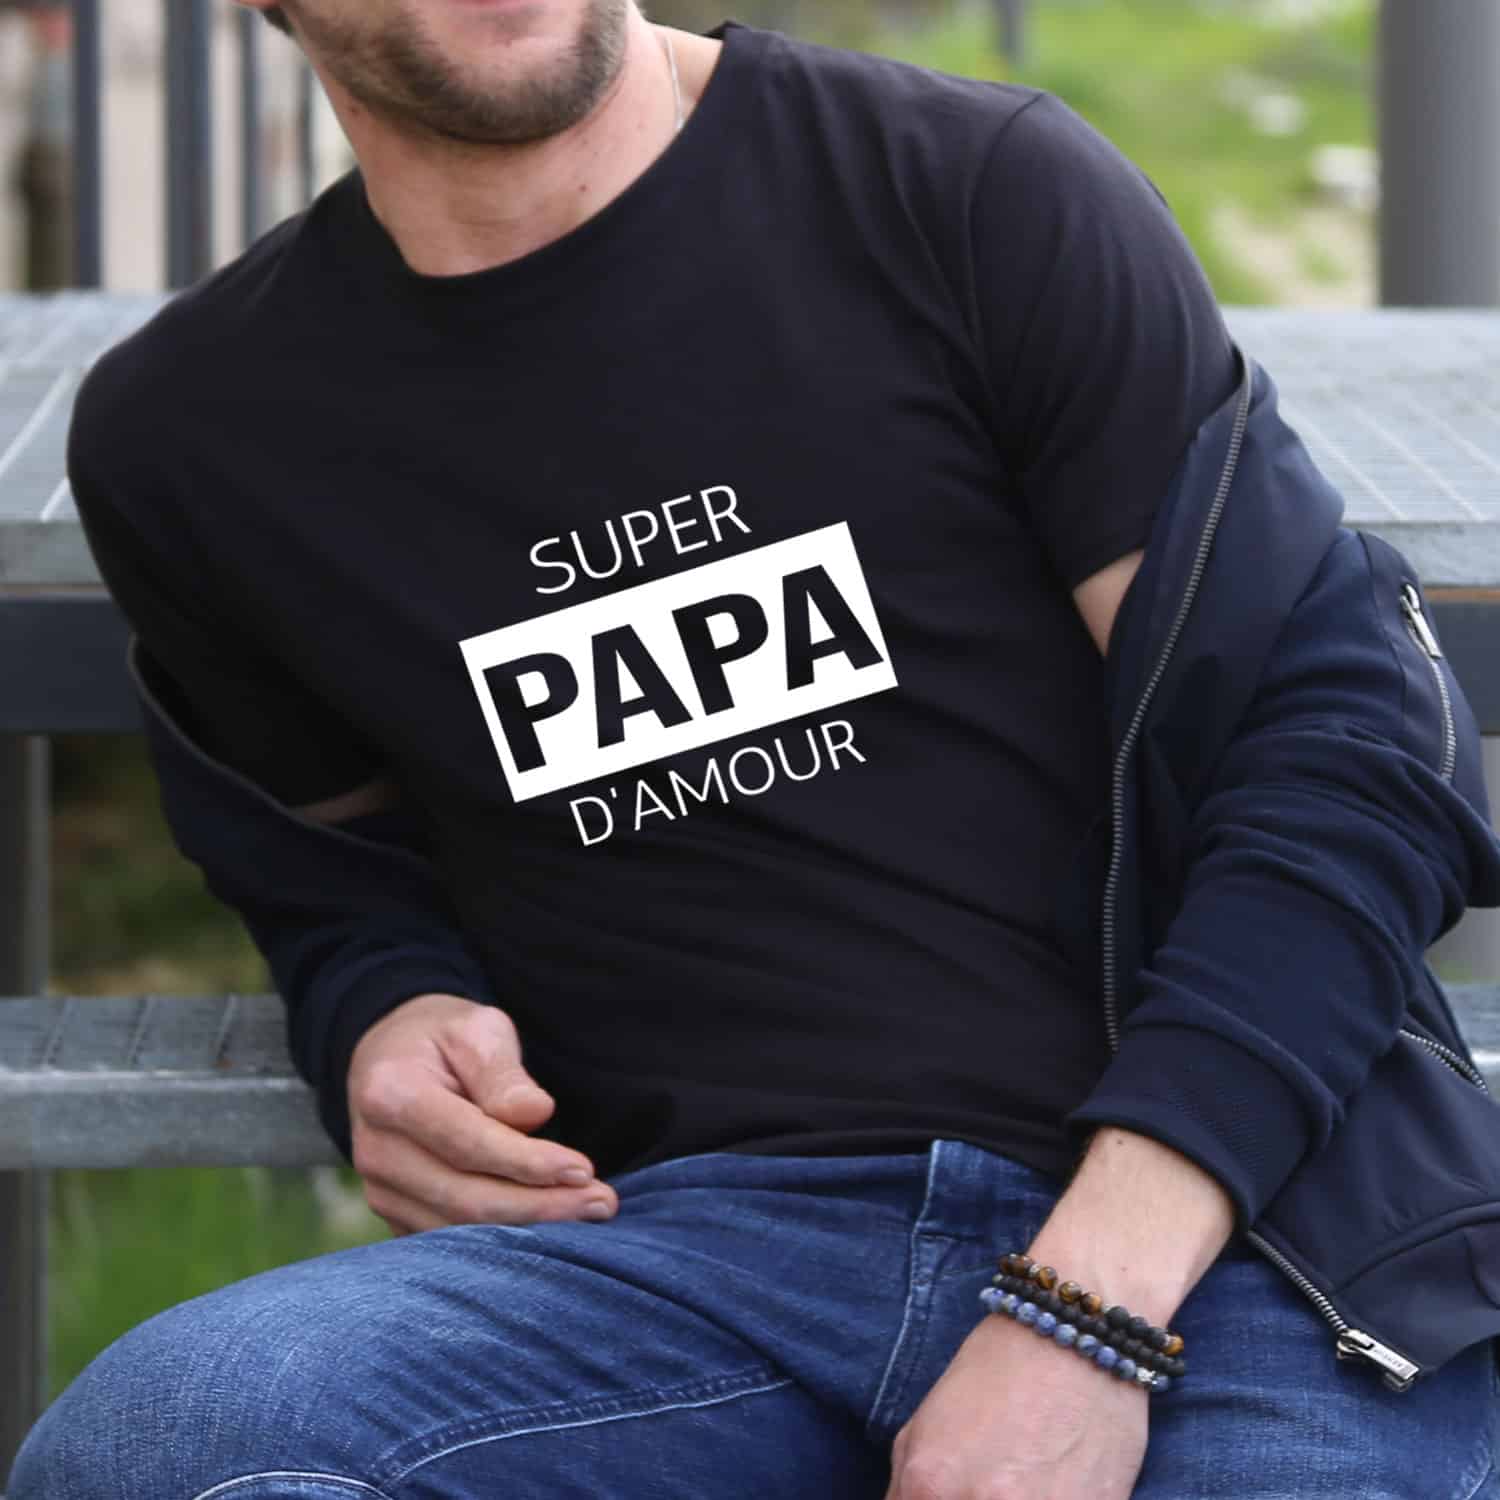 T-shirt Homme Super papa d'amour